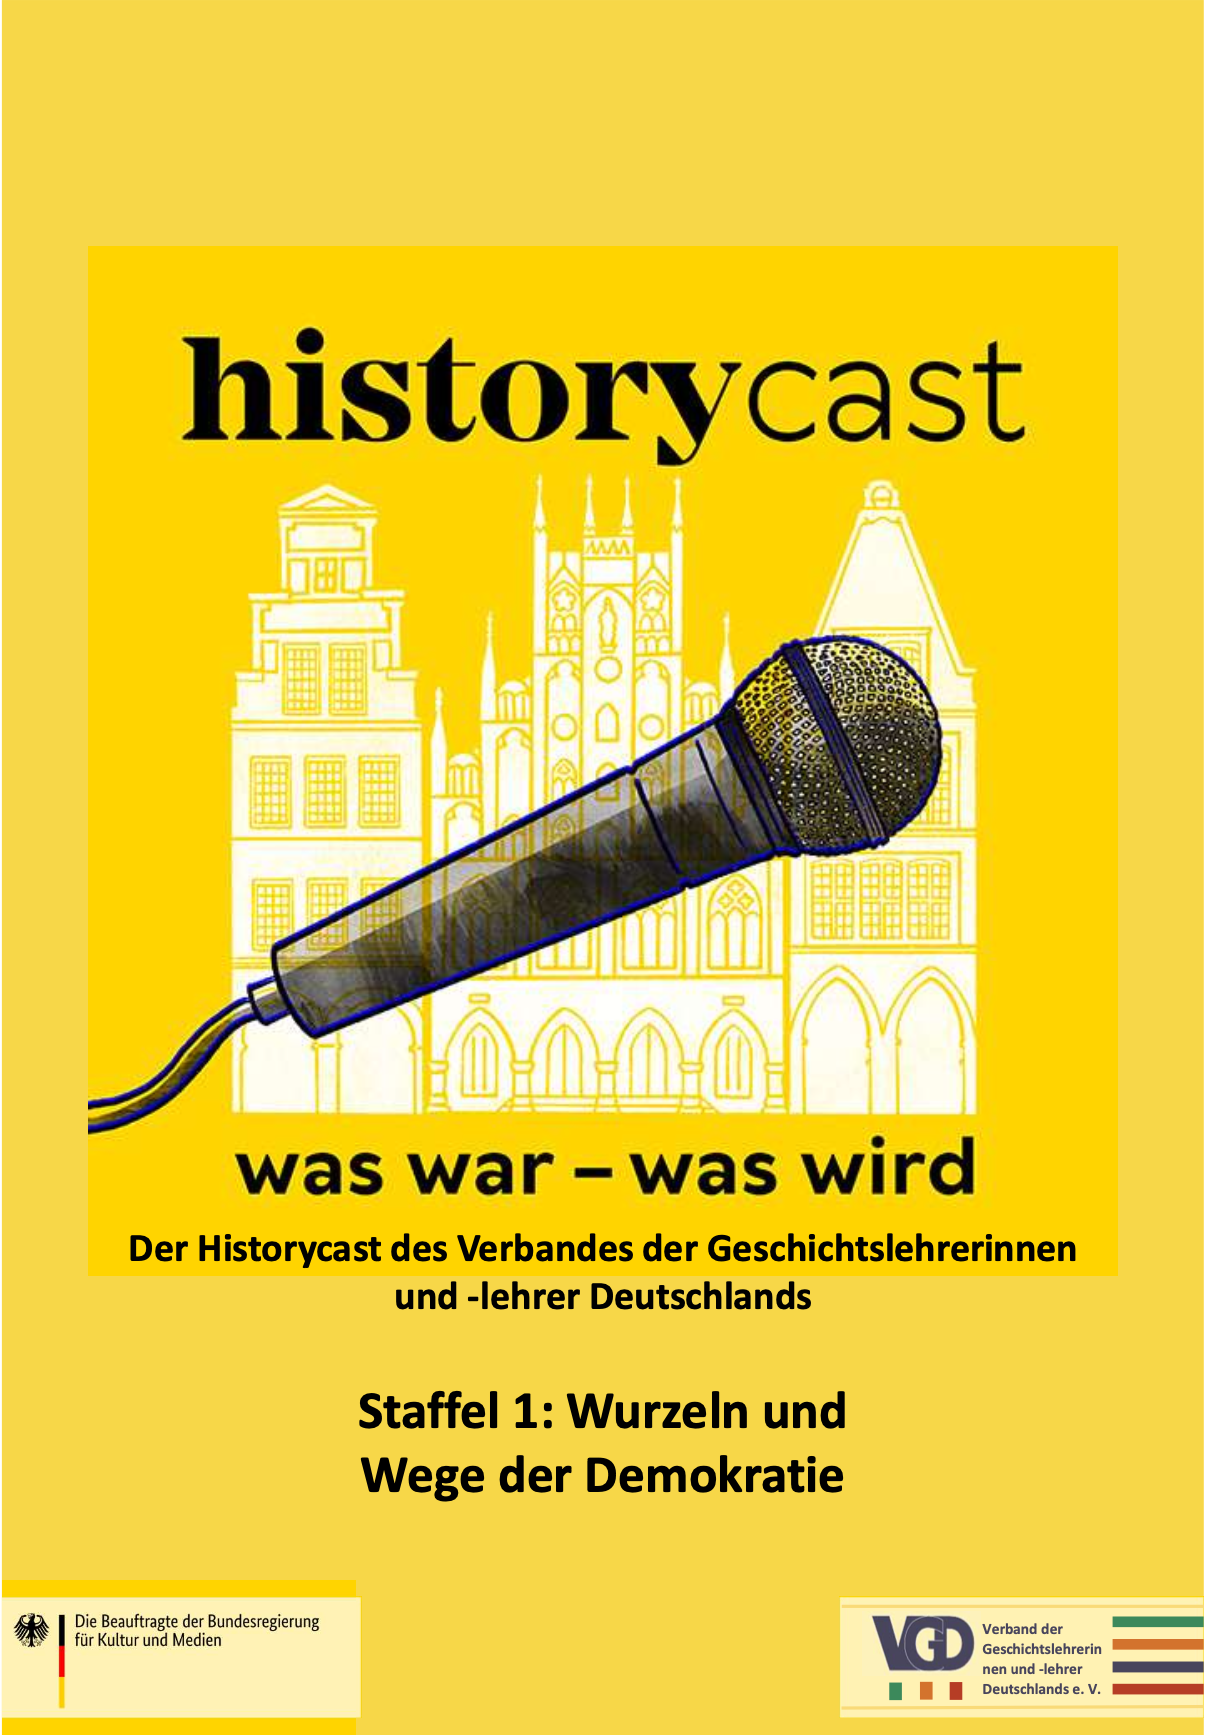 historycast startet am 04.02.2022